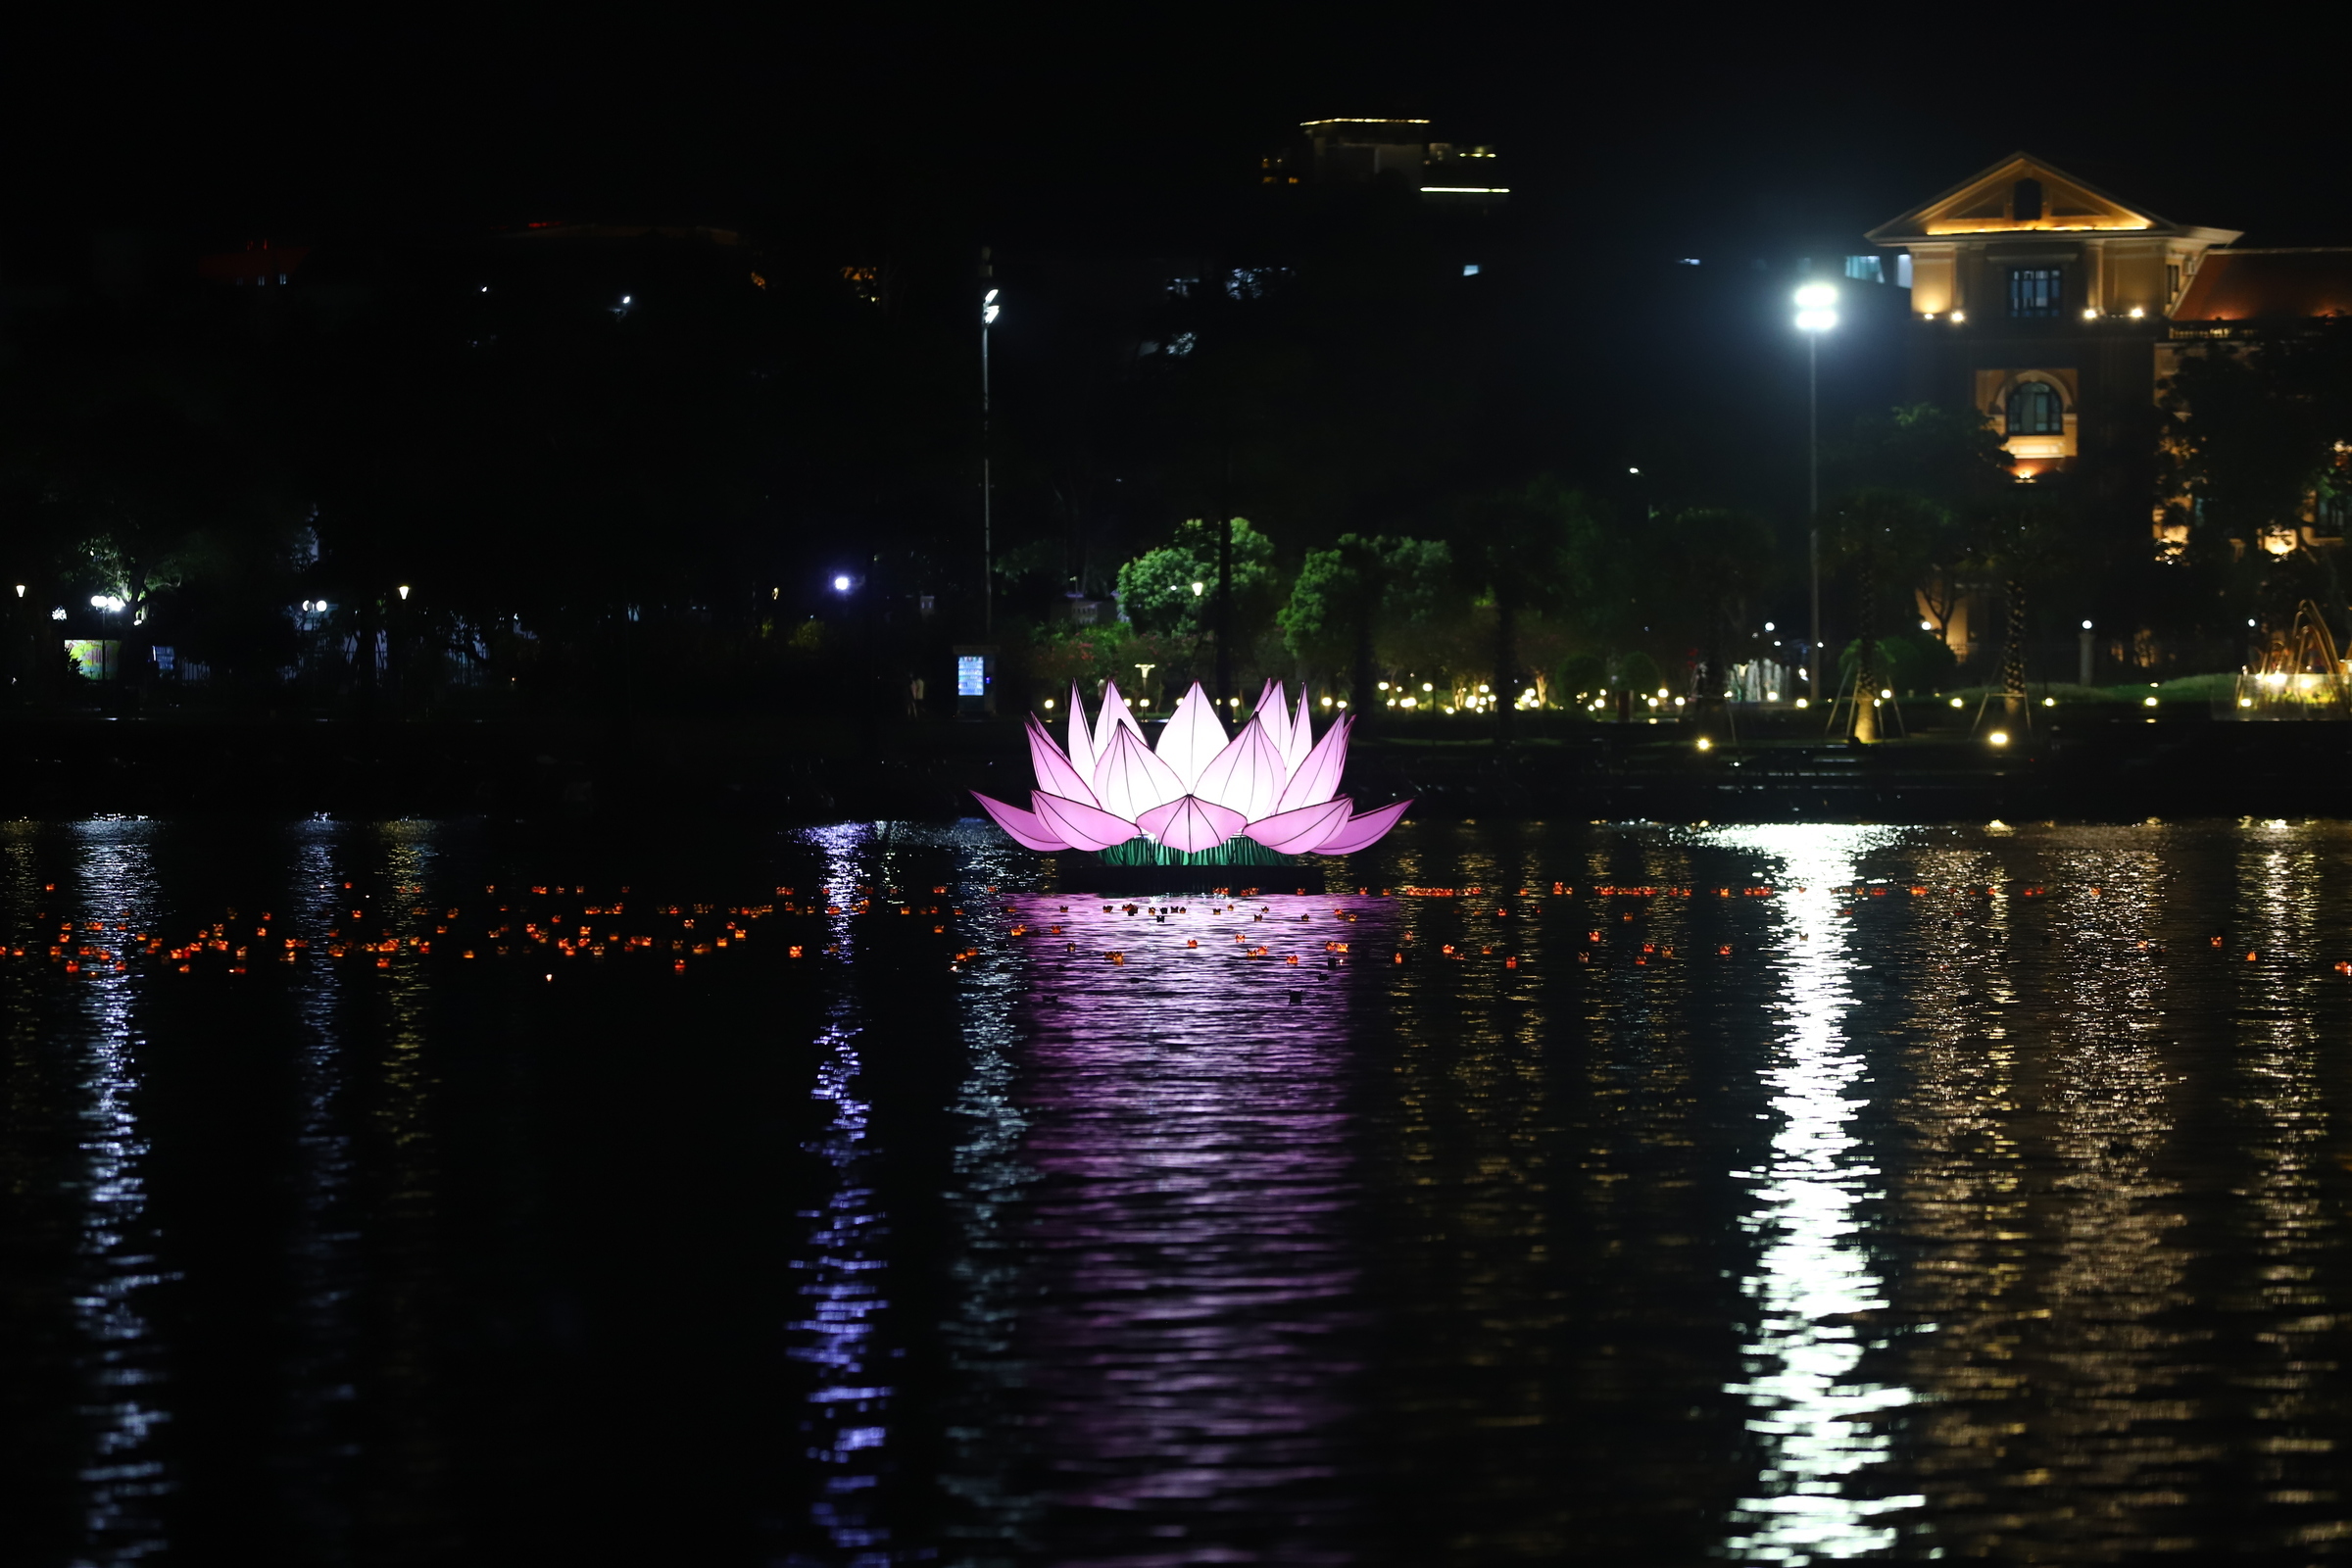 Thắp sáng 7 hoa sen khổng lồ trên sông Hương